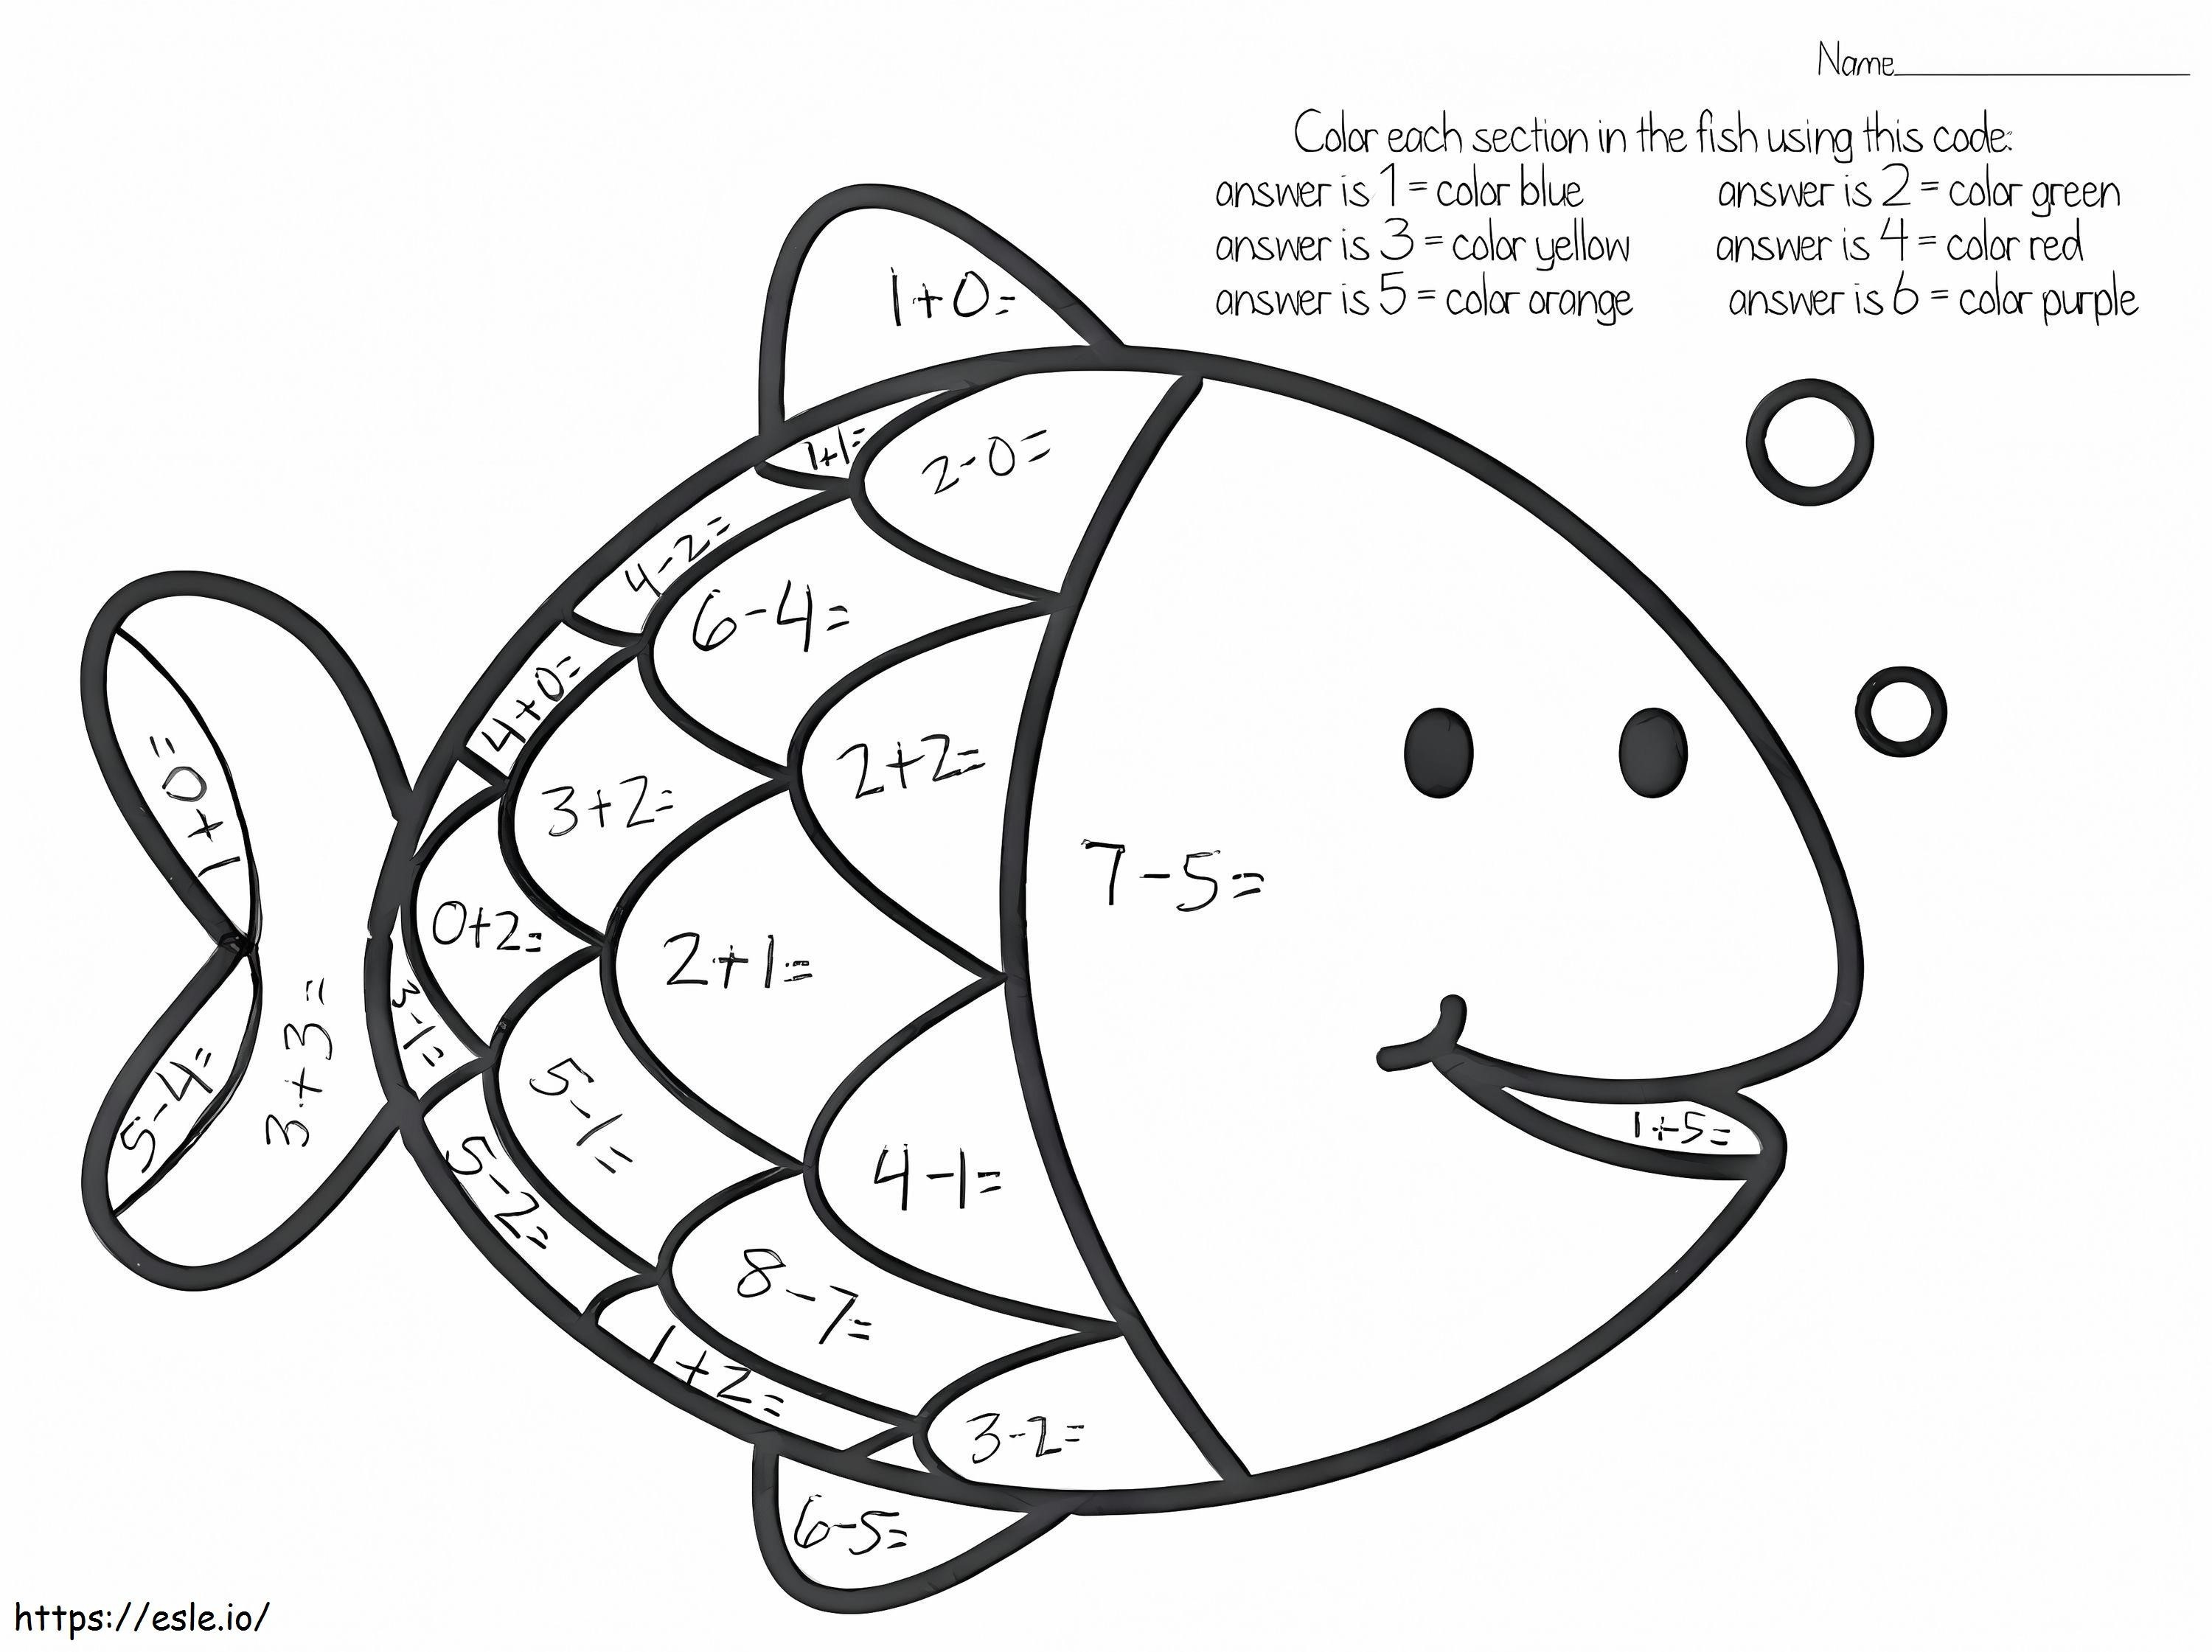 Foglio di lavoro per la matematica dei pesci da colorare